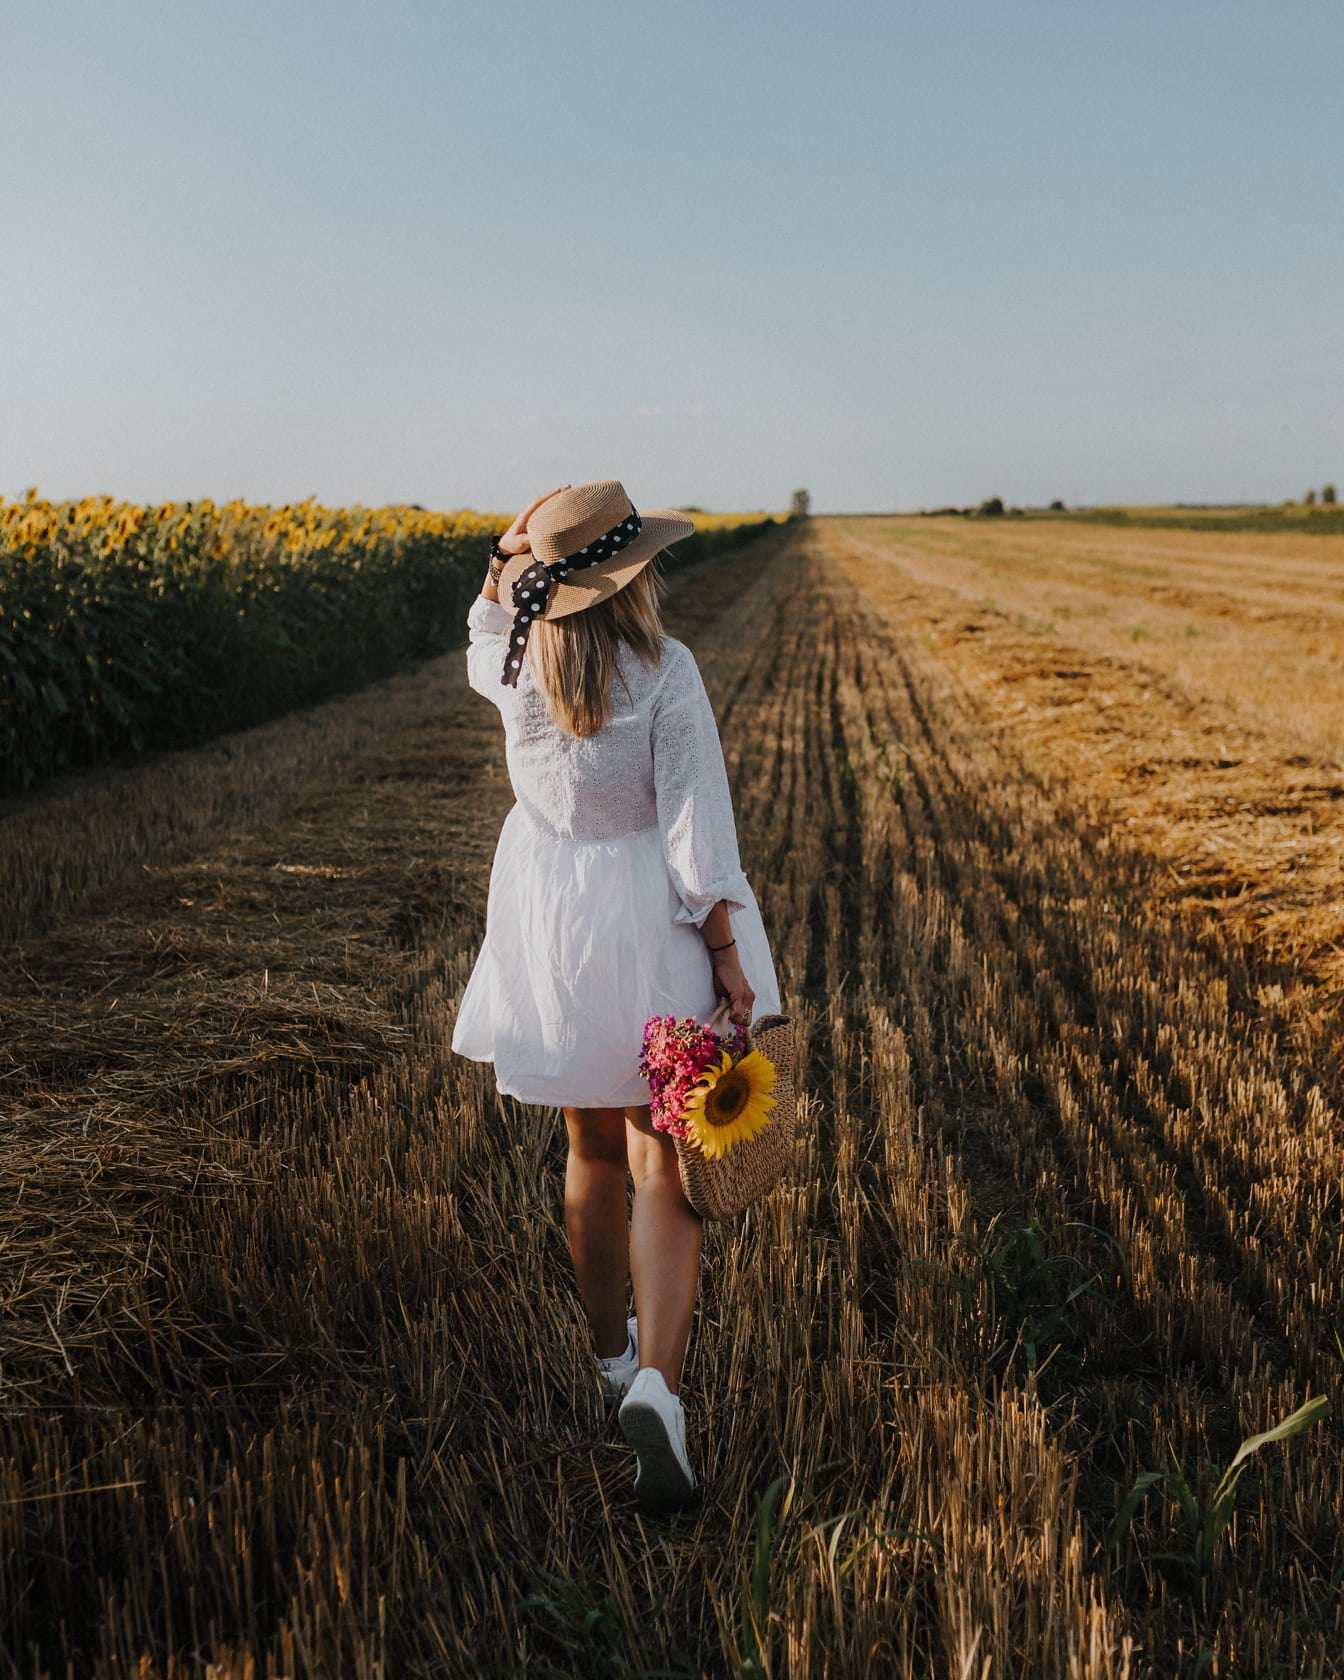 Biała sukienka i kapelusz na kobiecie na polu pszenicy